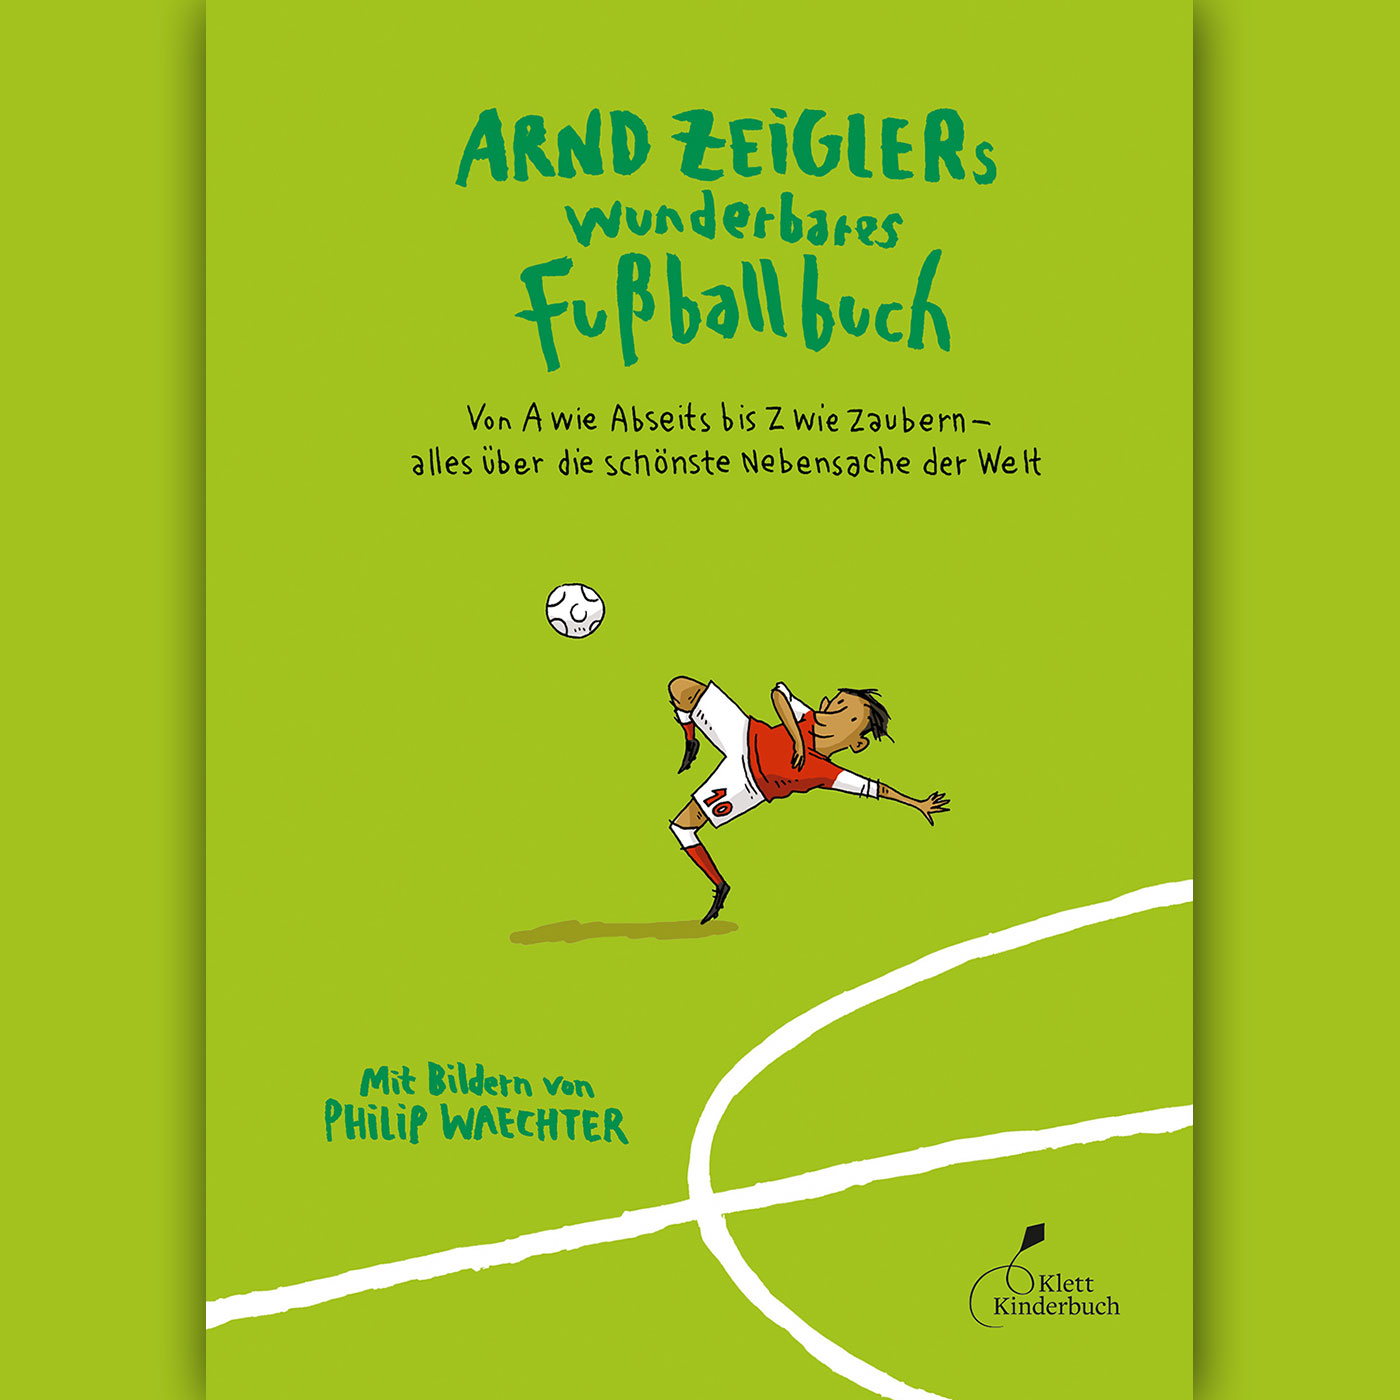 Das Kinderbuch zur Fußball-EM: "Arnd Zeiglers wunderbares Fußballbuch"